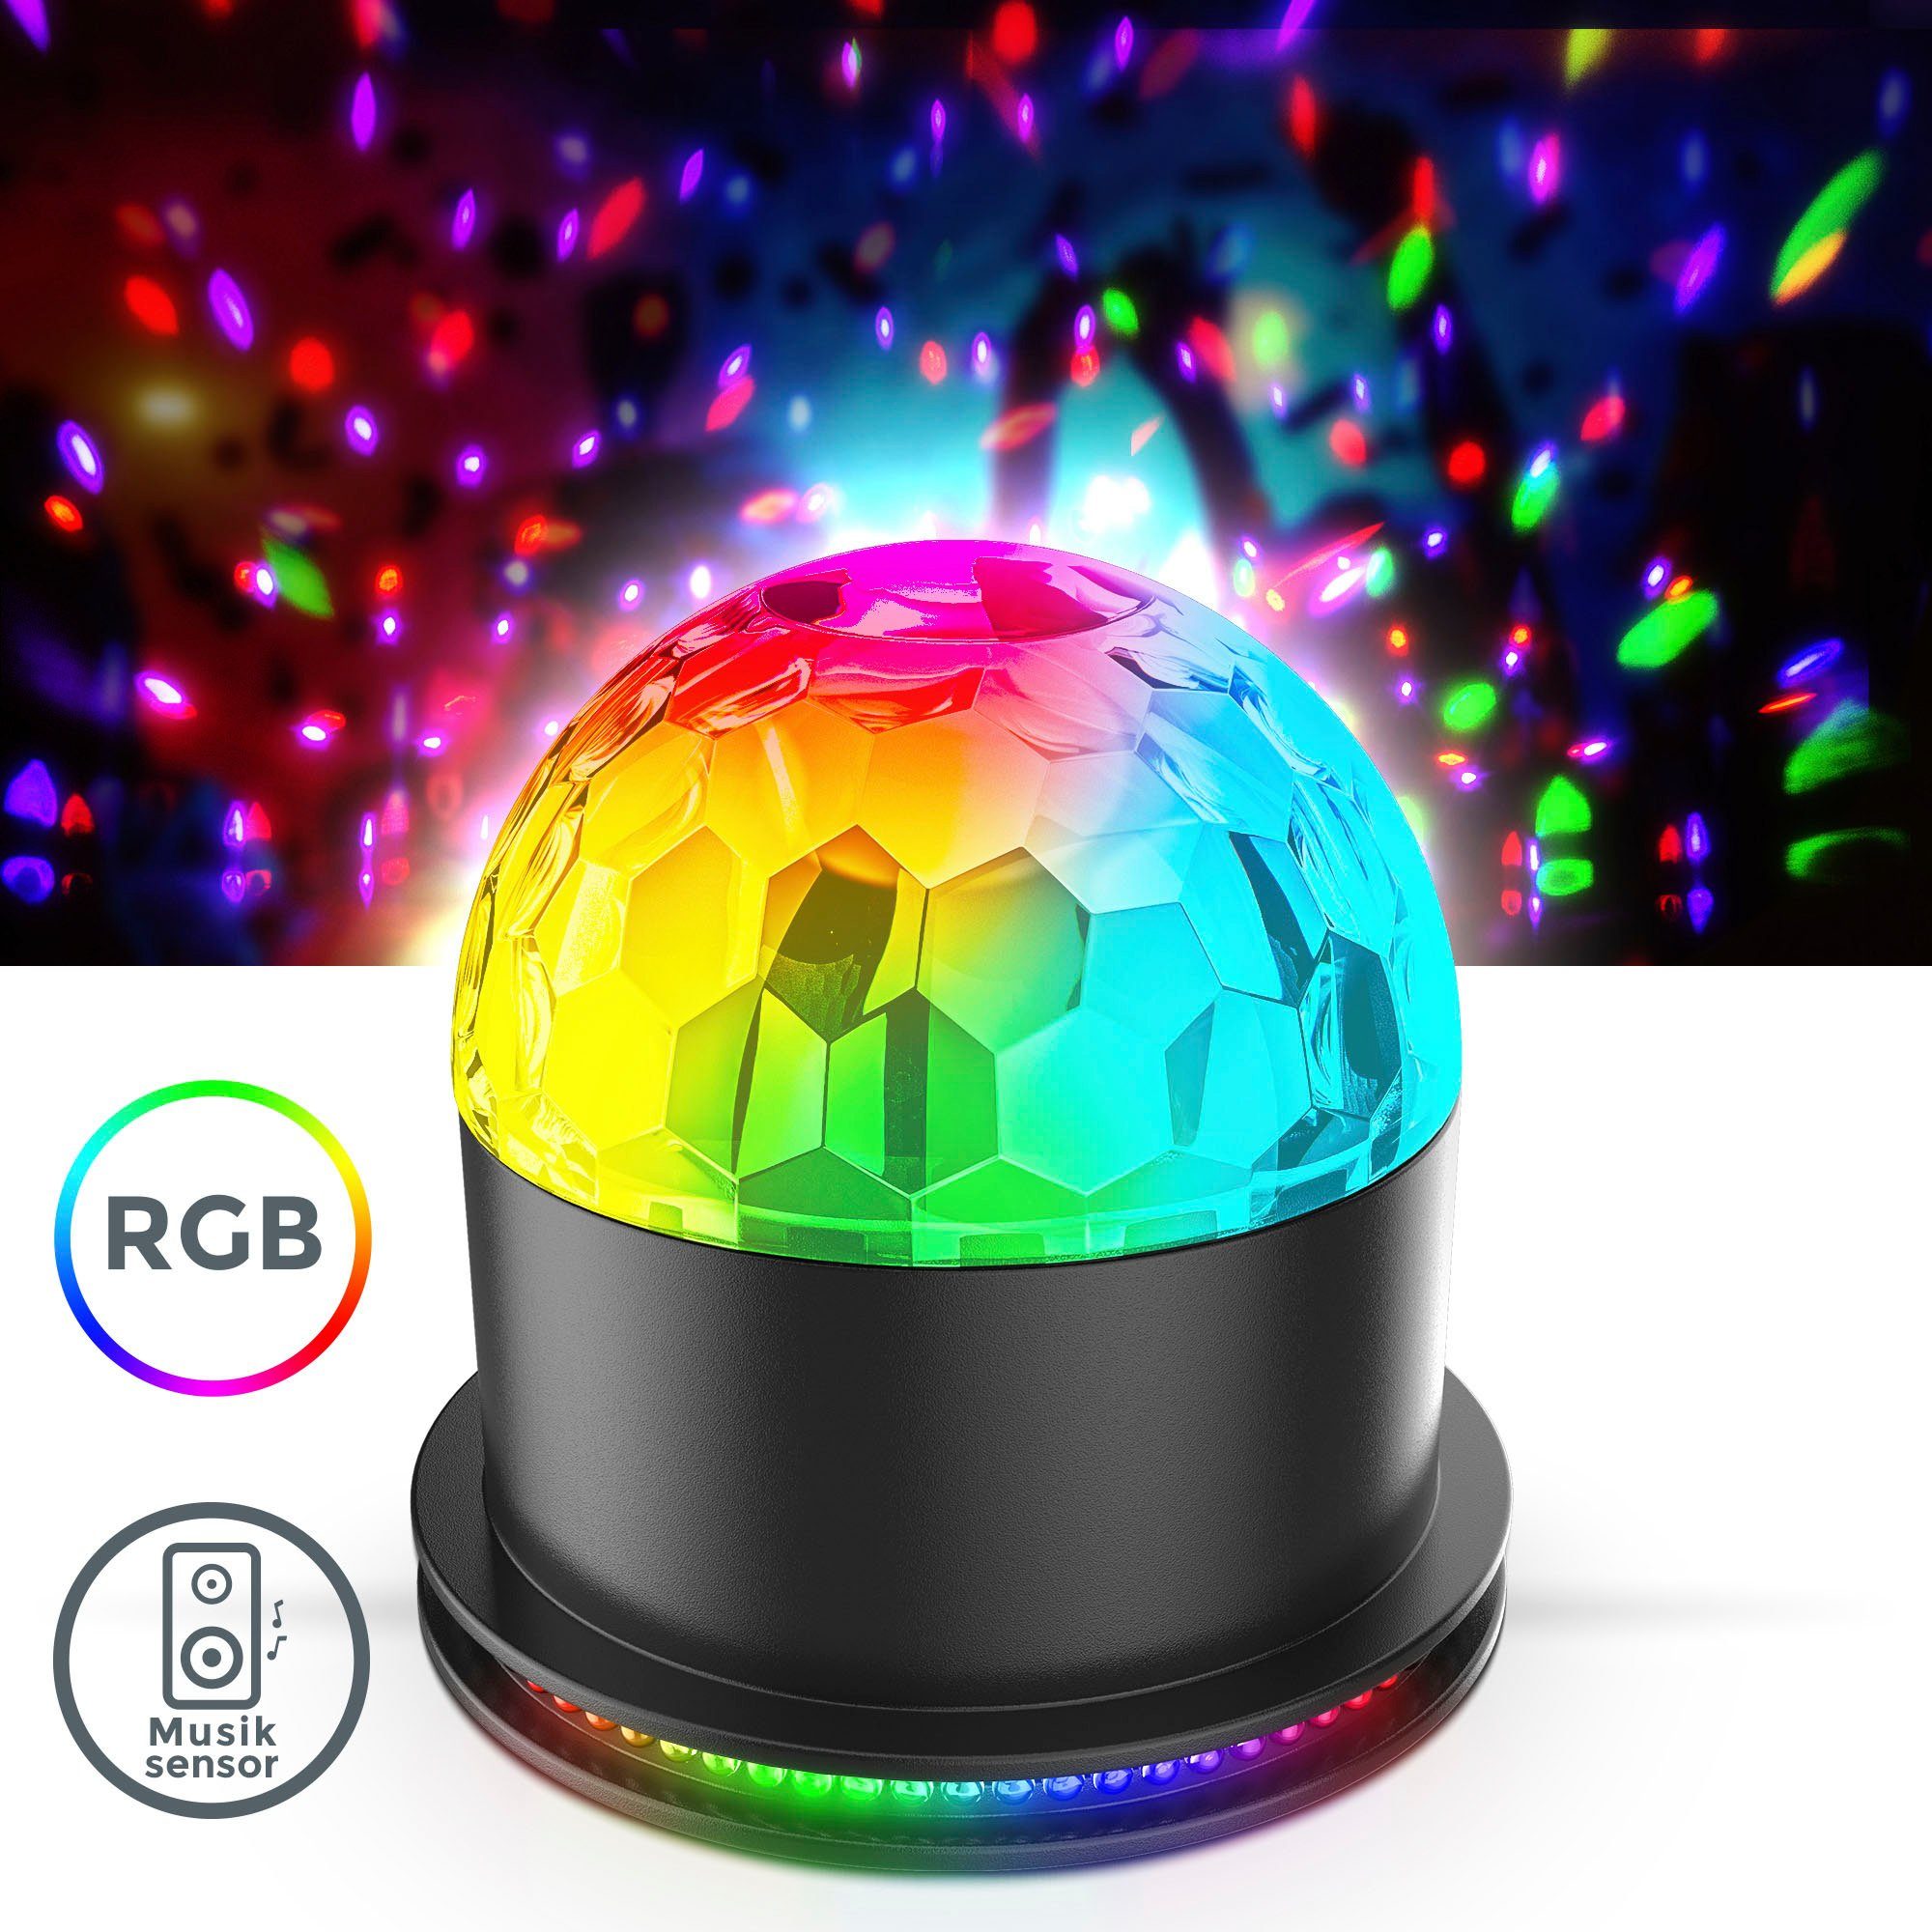 Discolicht, LED Tischlampe RGB, Musiksensor, fest RGB RGB, Partyleuchte, BK_GD1327 integriert, Motivstrahler Partylicht, mit LED B.K.Licht LED Farbwechsel,